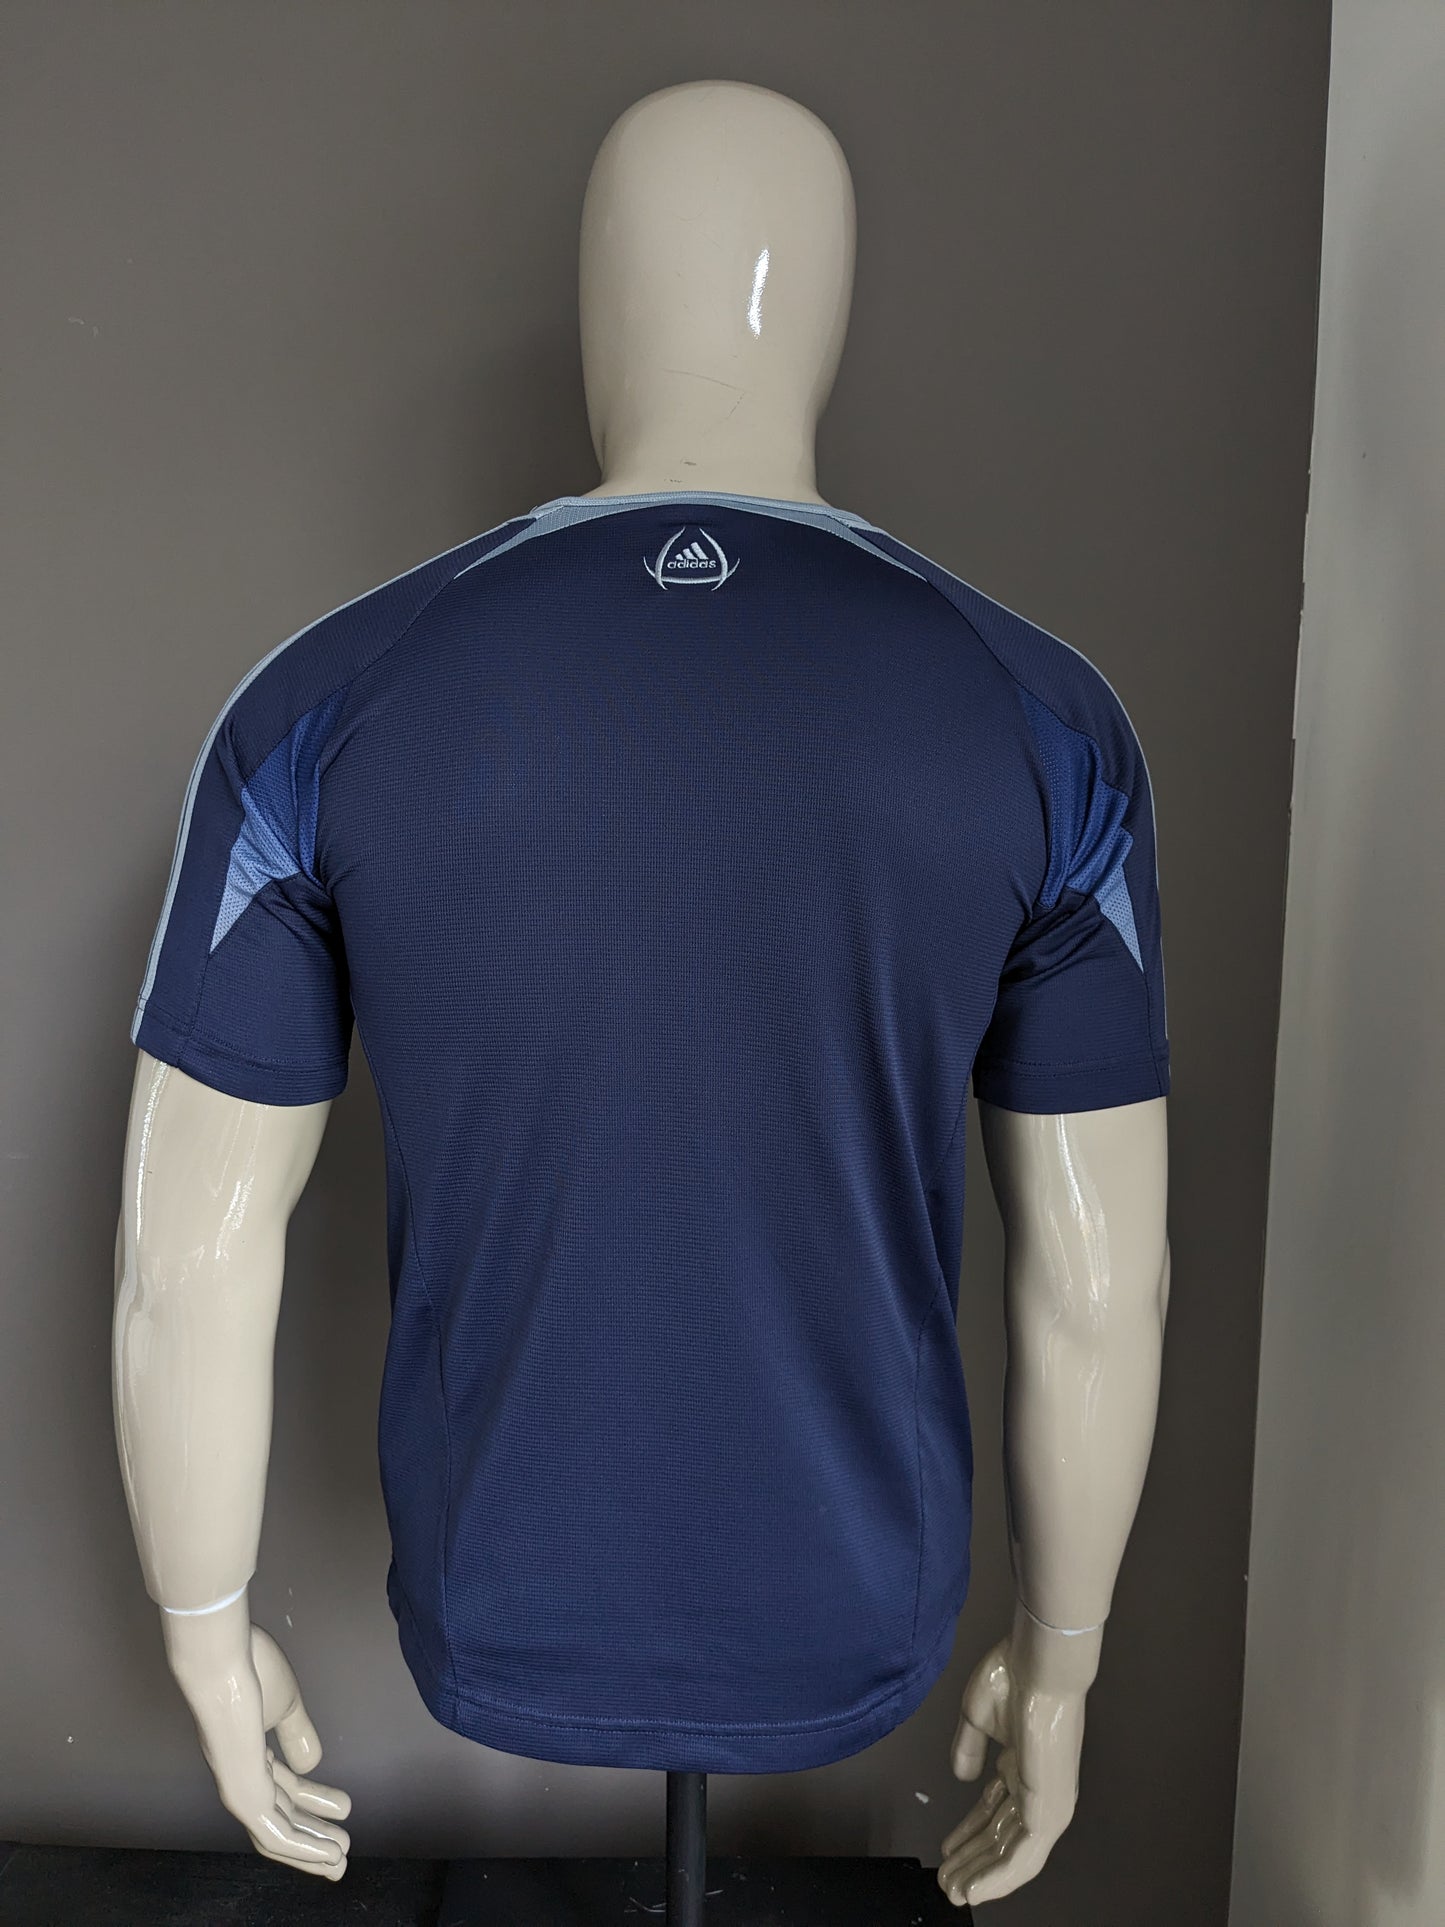 Camicia sportiva adidas. Colorato blu. Taglia S.